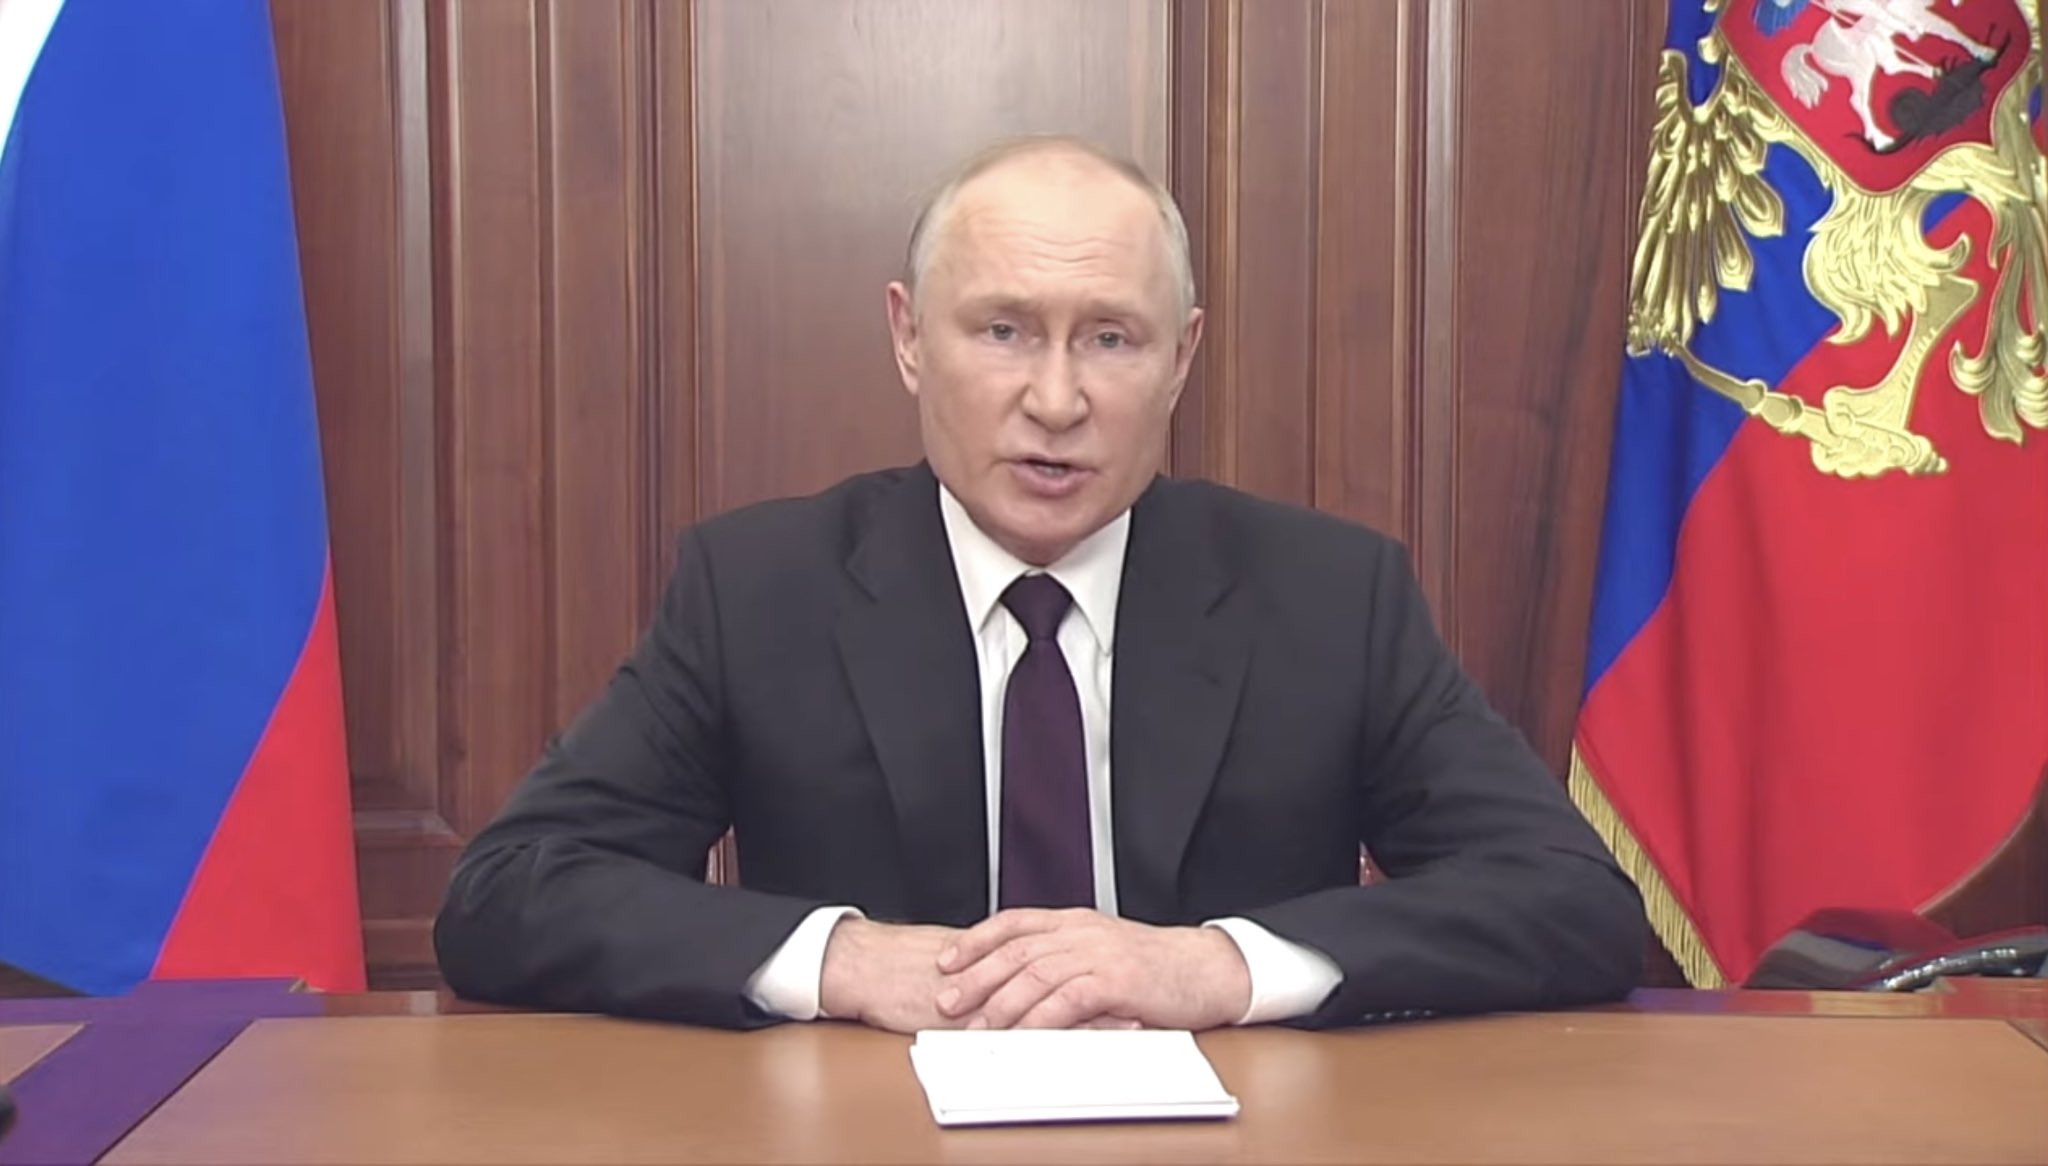 Il Cremlino conferma che le esercitazioni con armi nucleari volute da Putin si svolgeranno nei tempi previsti